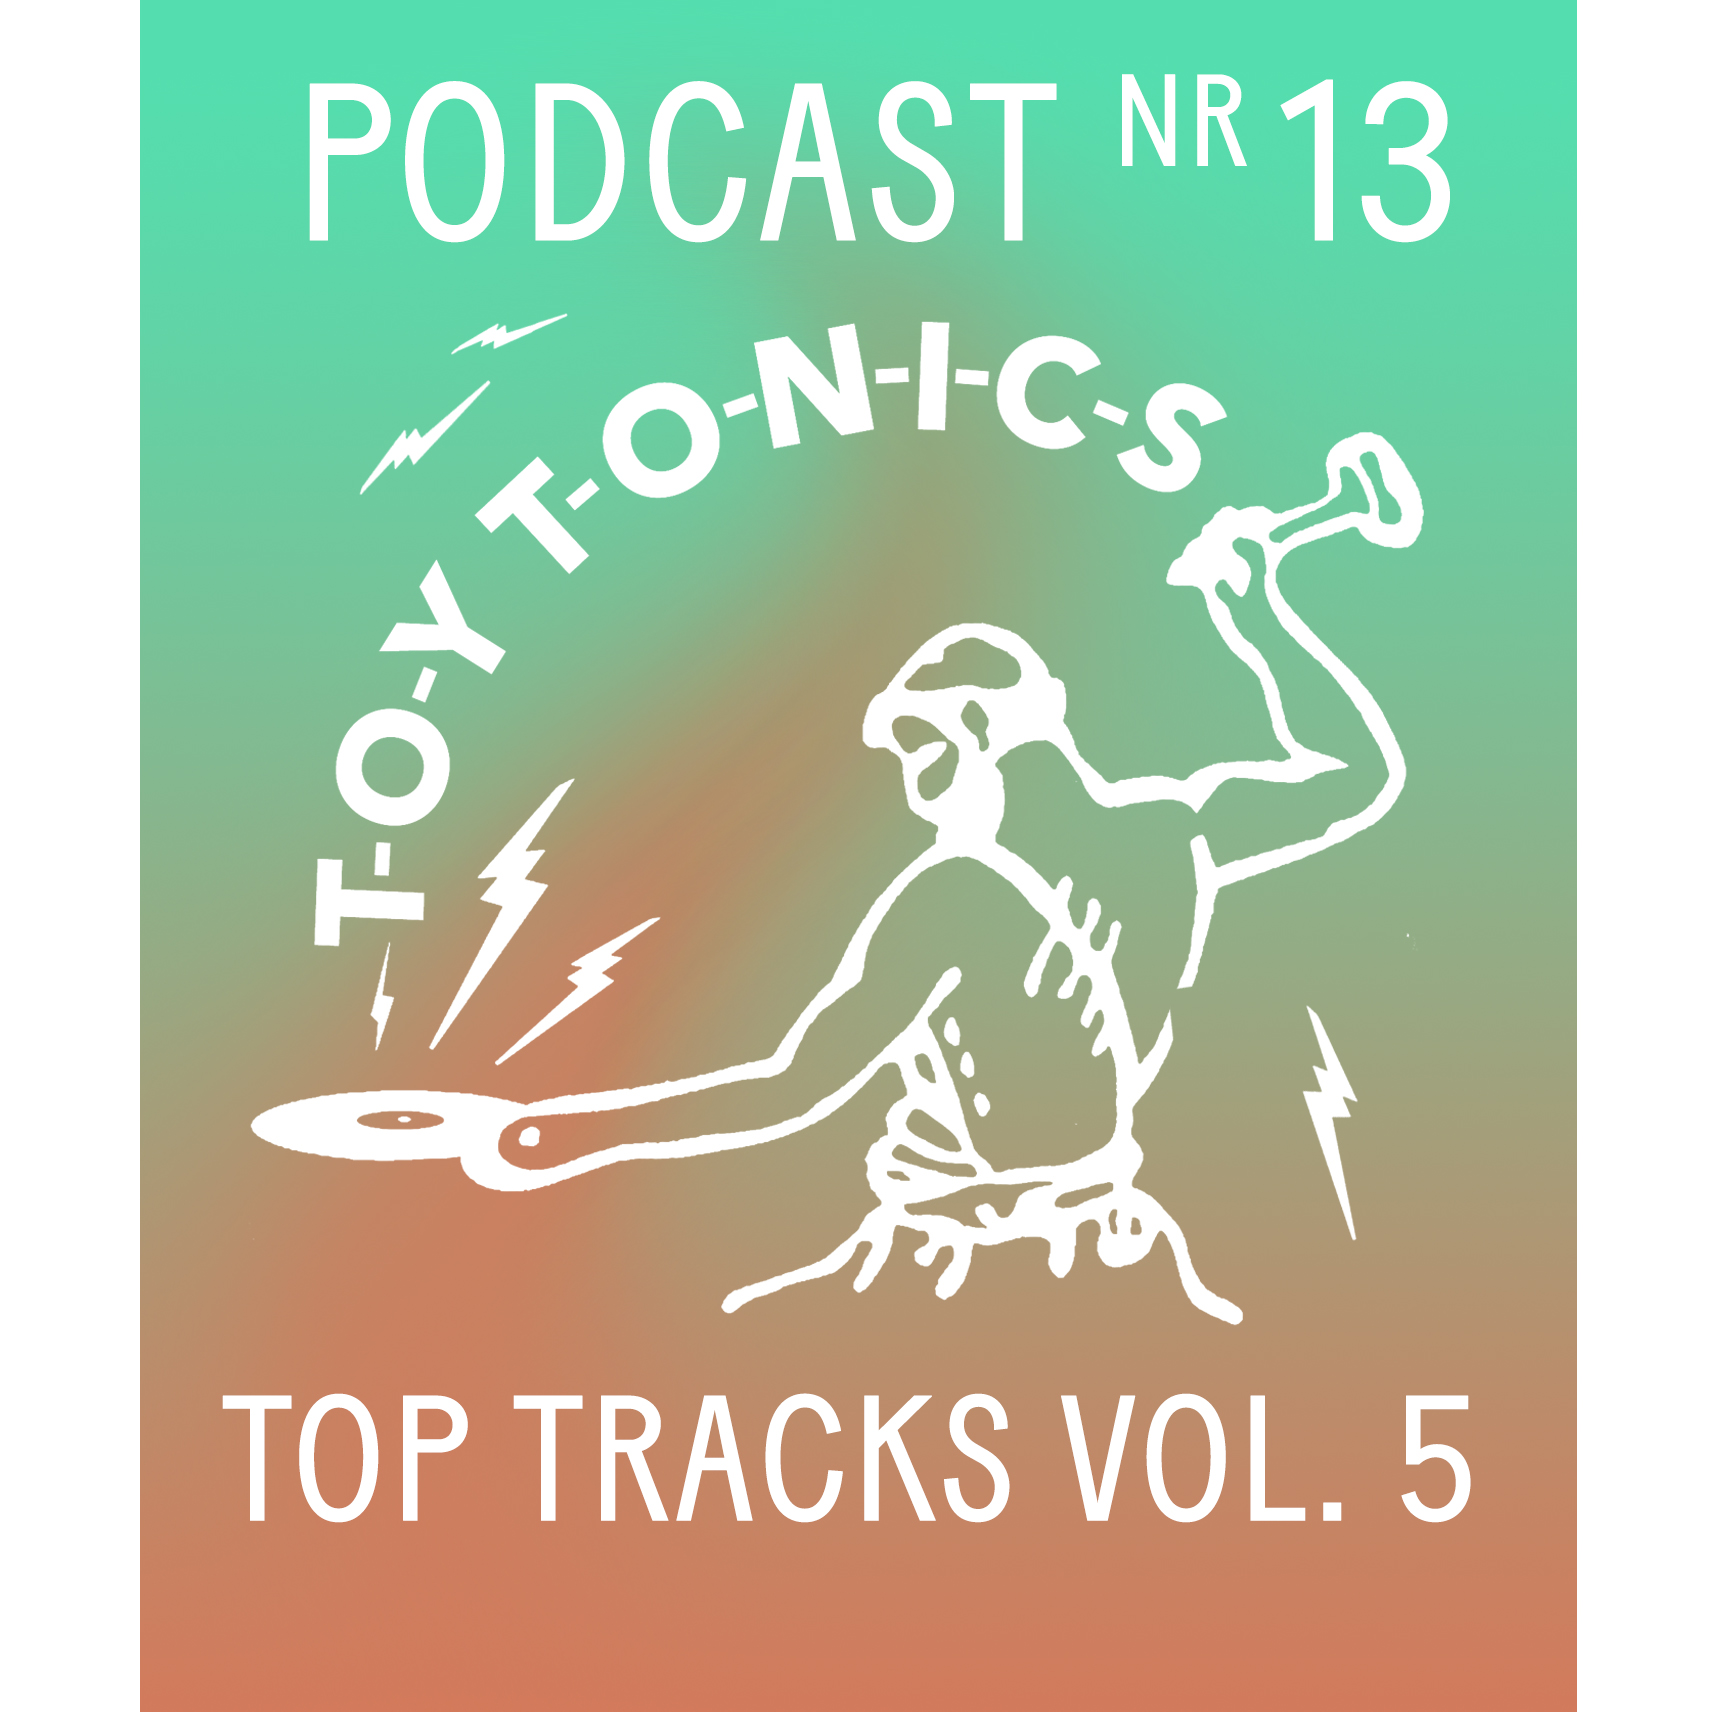 PODCAST NR 13 - Top Tracks Vol. 5 Continuous Mix